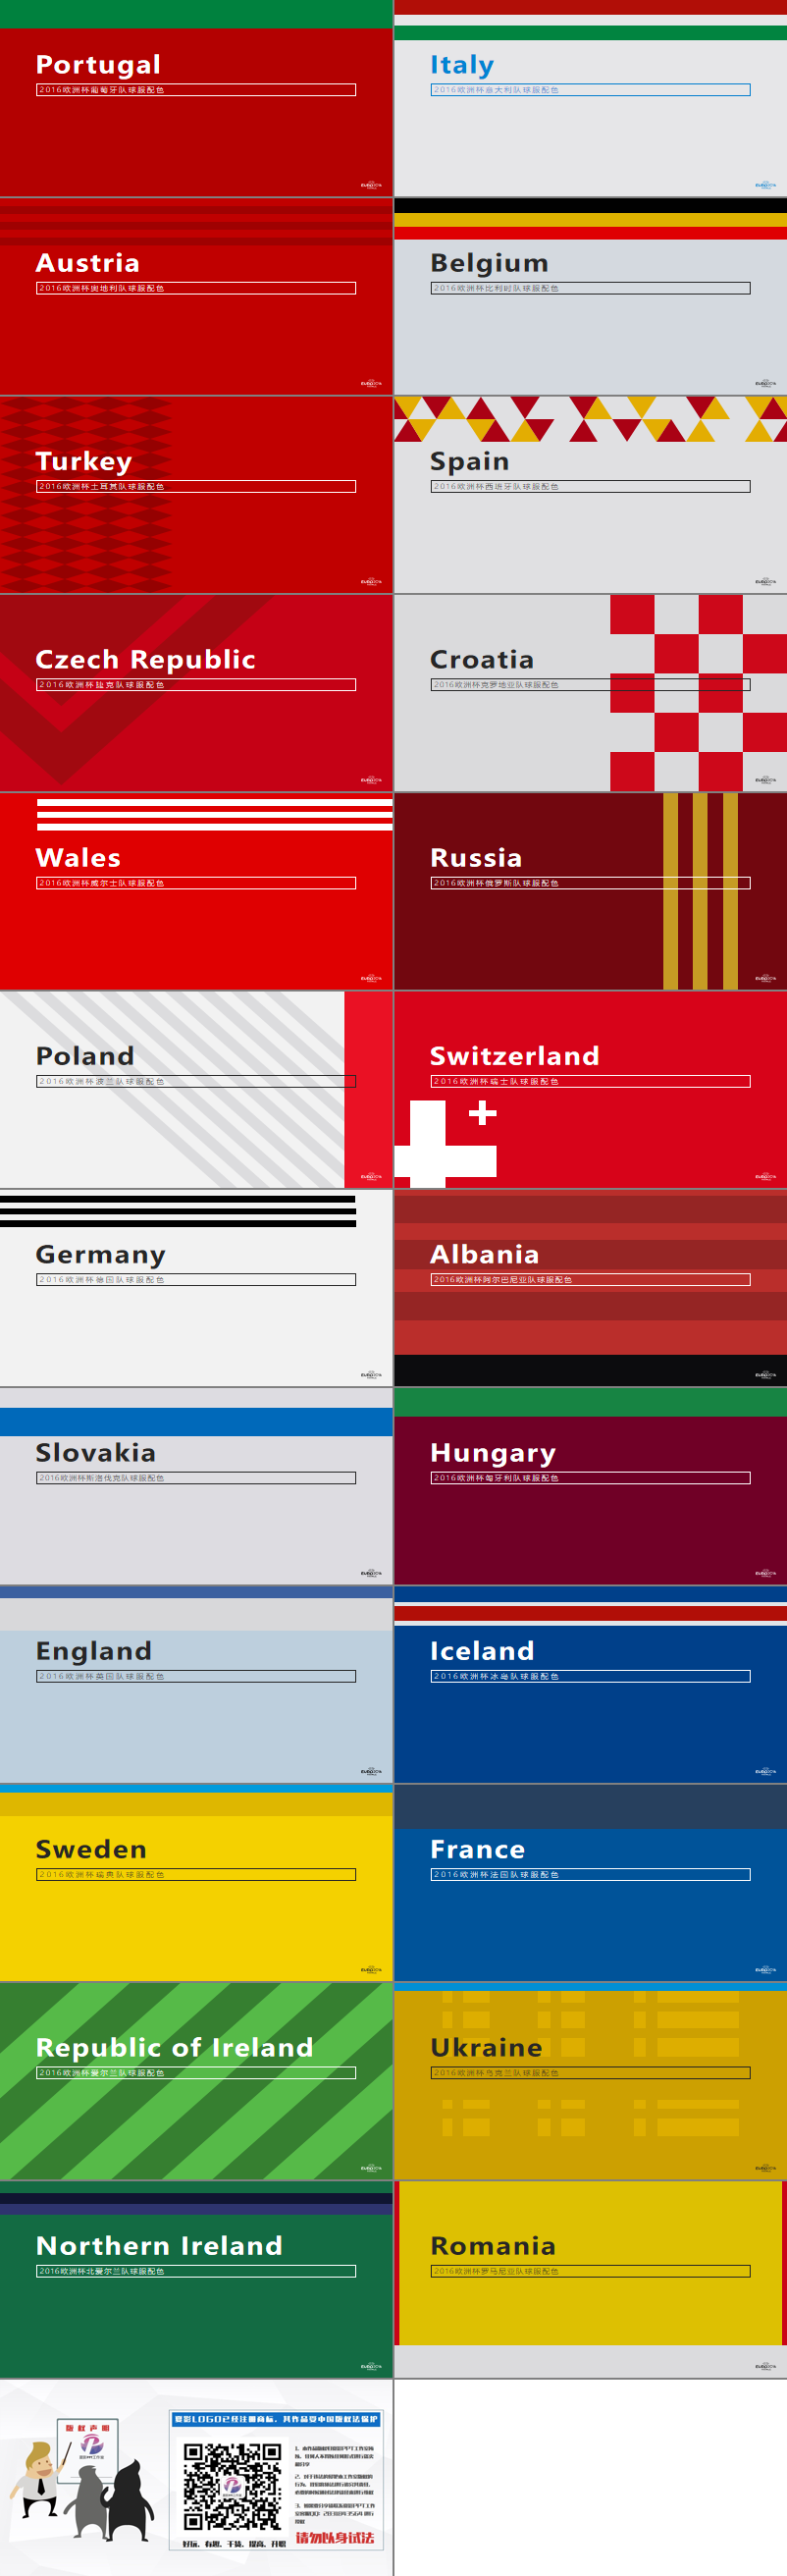 这24张欧洲杯球服配色PPT模板分别代表了24支欧洲杯参赛球队的球服设计